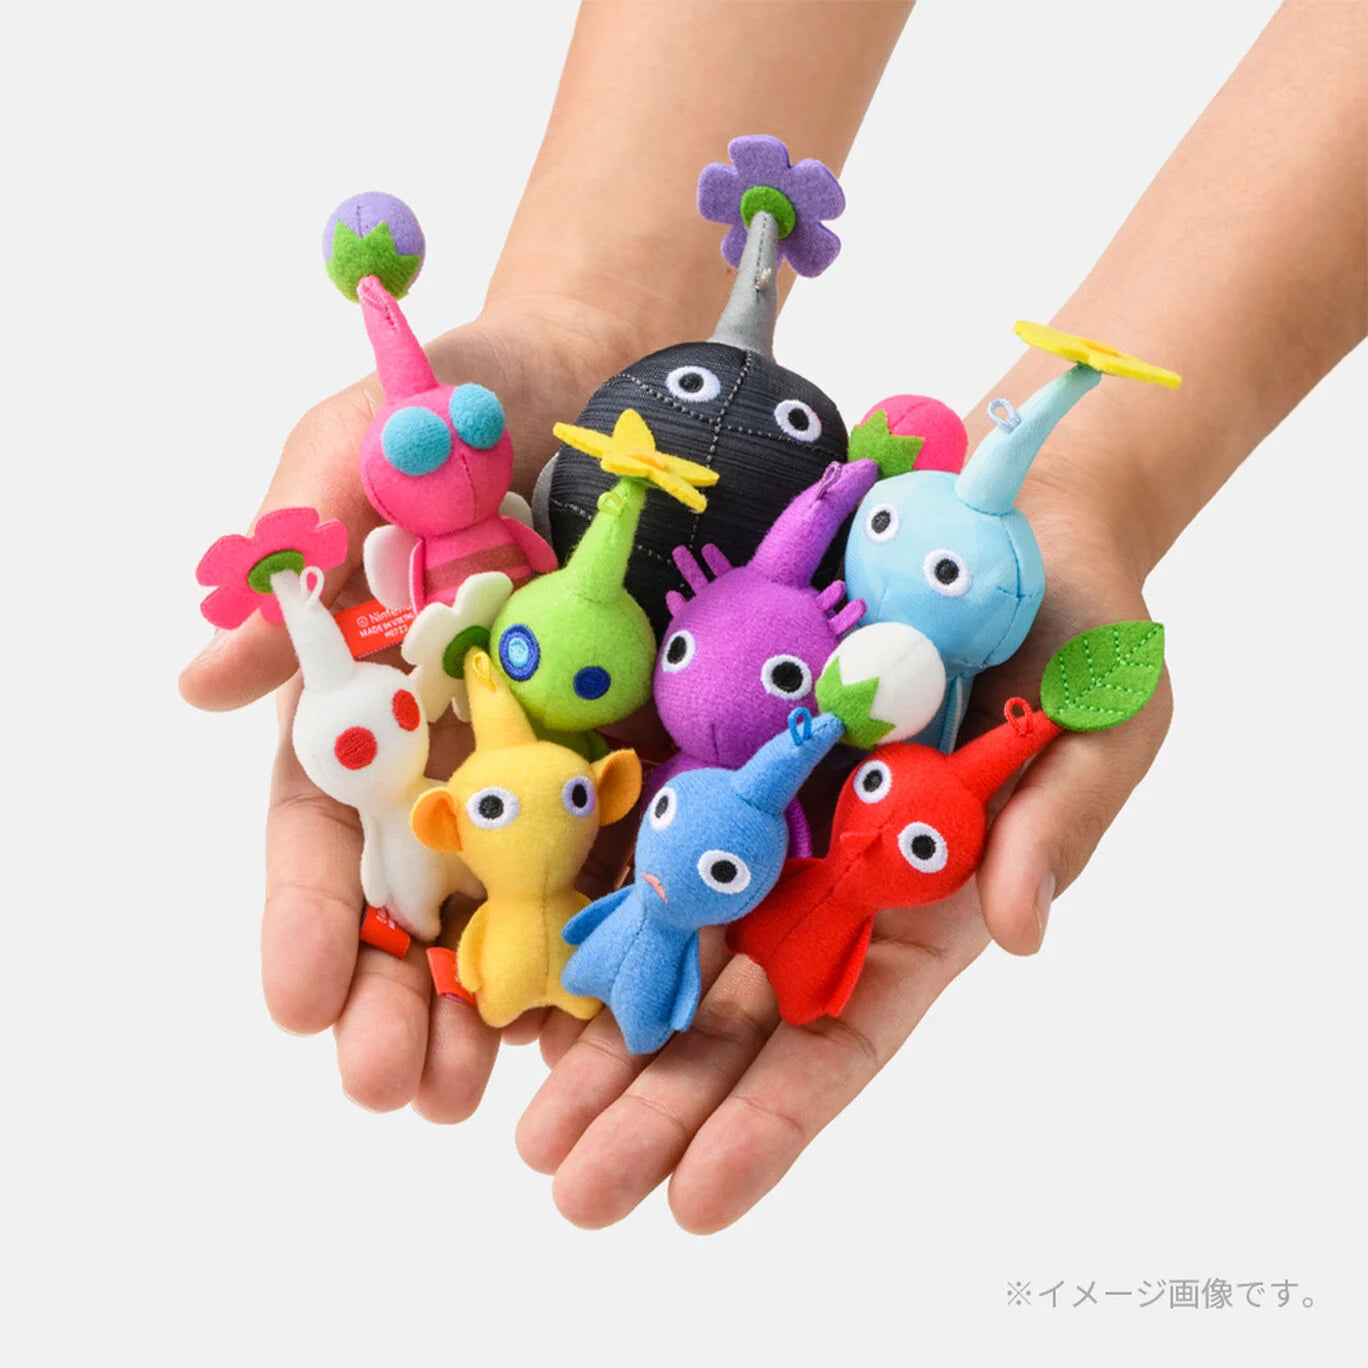 Nintendo Pikmin mascota 9 set Completo Nintendo TOKYO/OSAKA/KYOTO NUEVO